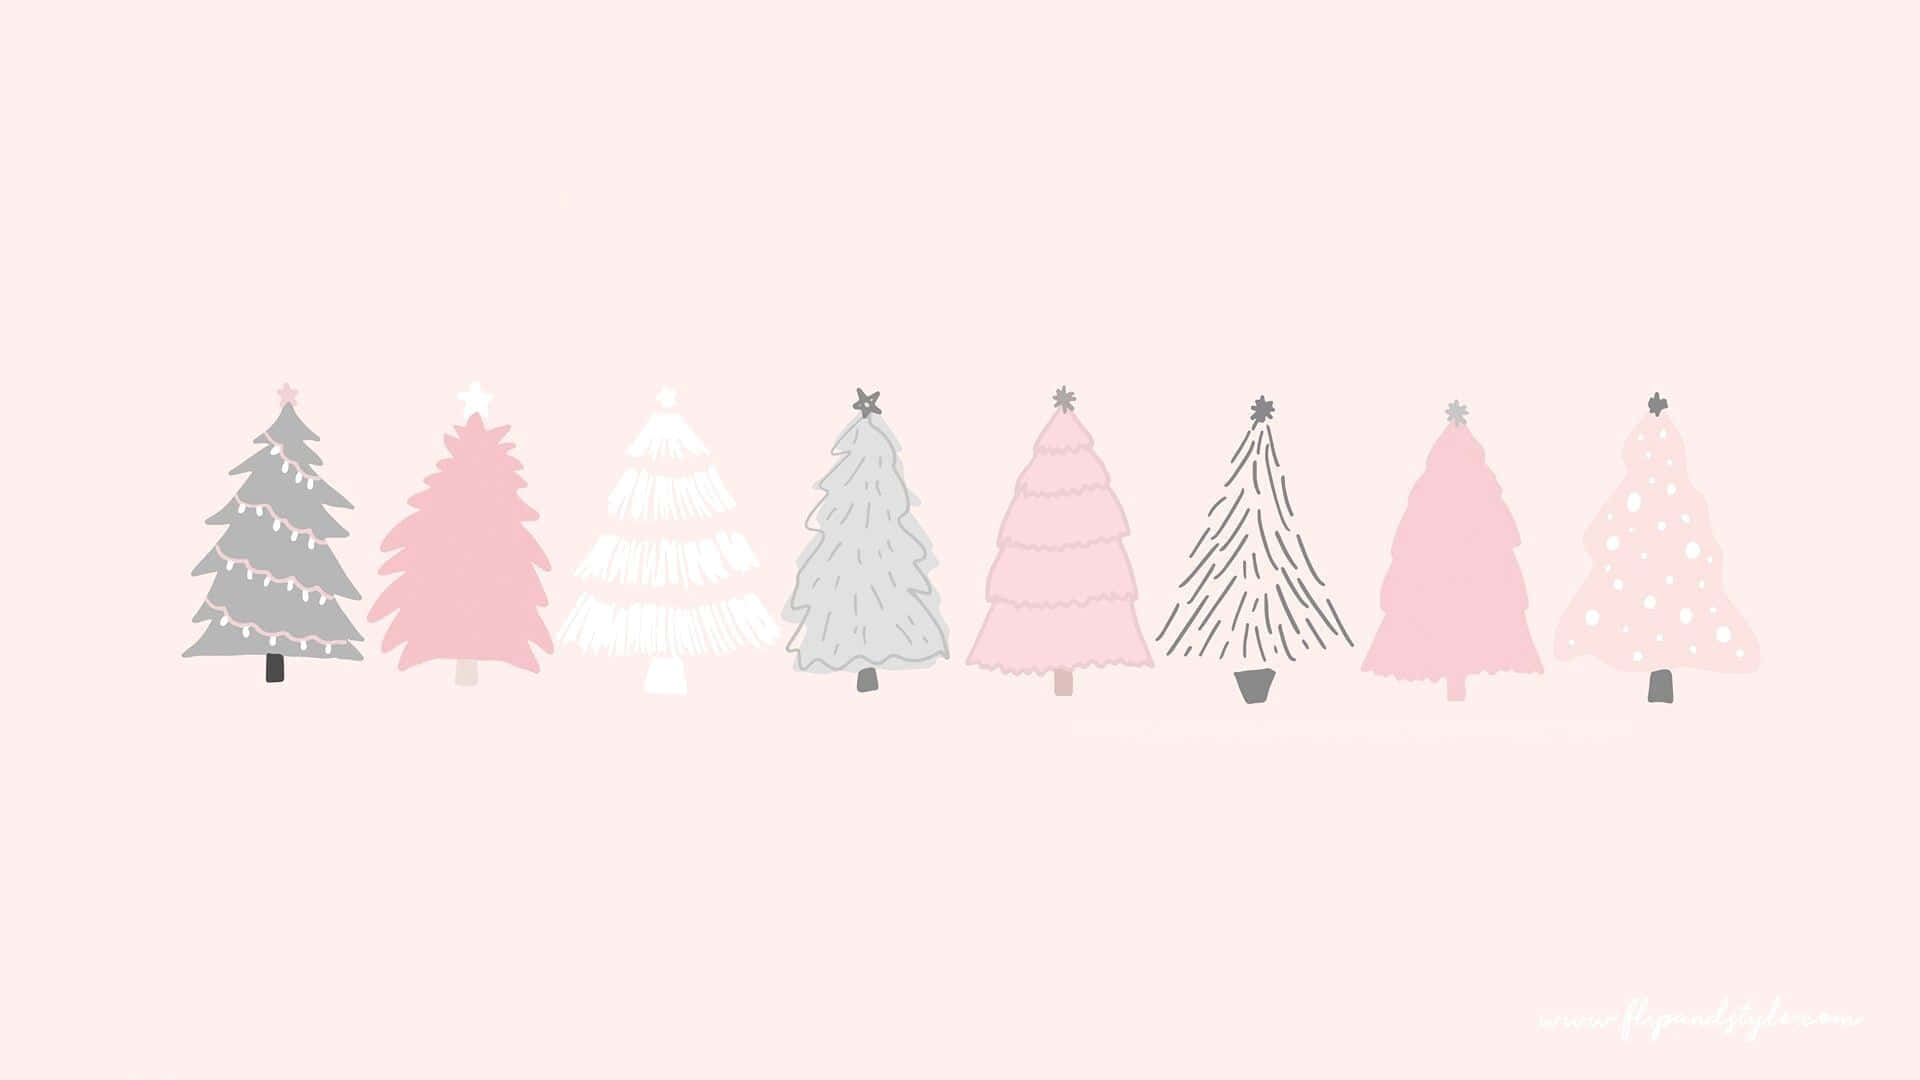 Machensie Sich Bereit, Festliche Stimmung Zu Fühlen! Dieser Niedliche Weihnachtsbaum Wird Sie In Weihnachtsstimmung Versetzen! Wallpaper